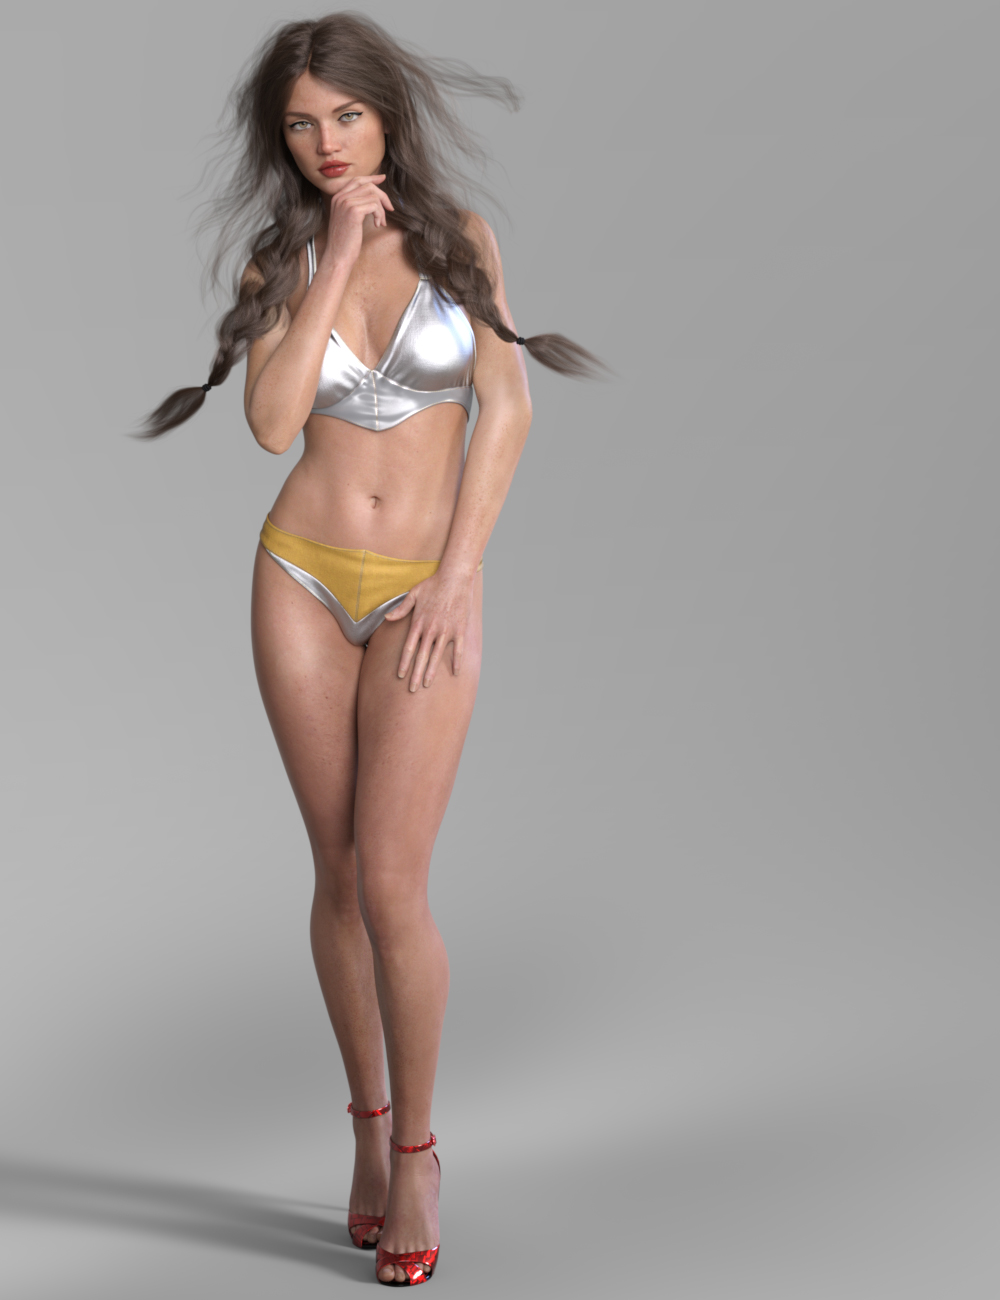 RY Belynda for Genesis 8 Female by: Raiya, 3D Models by Daz 3D